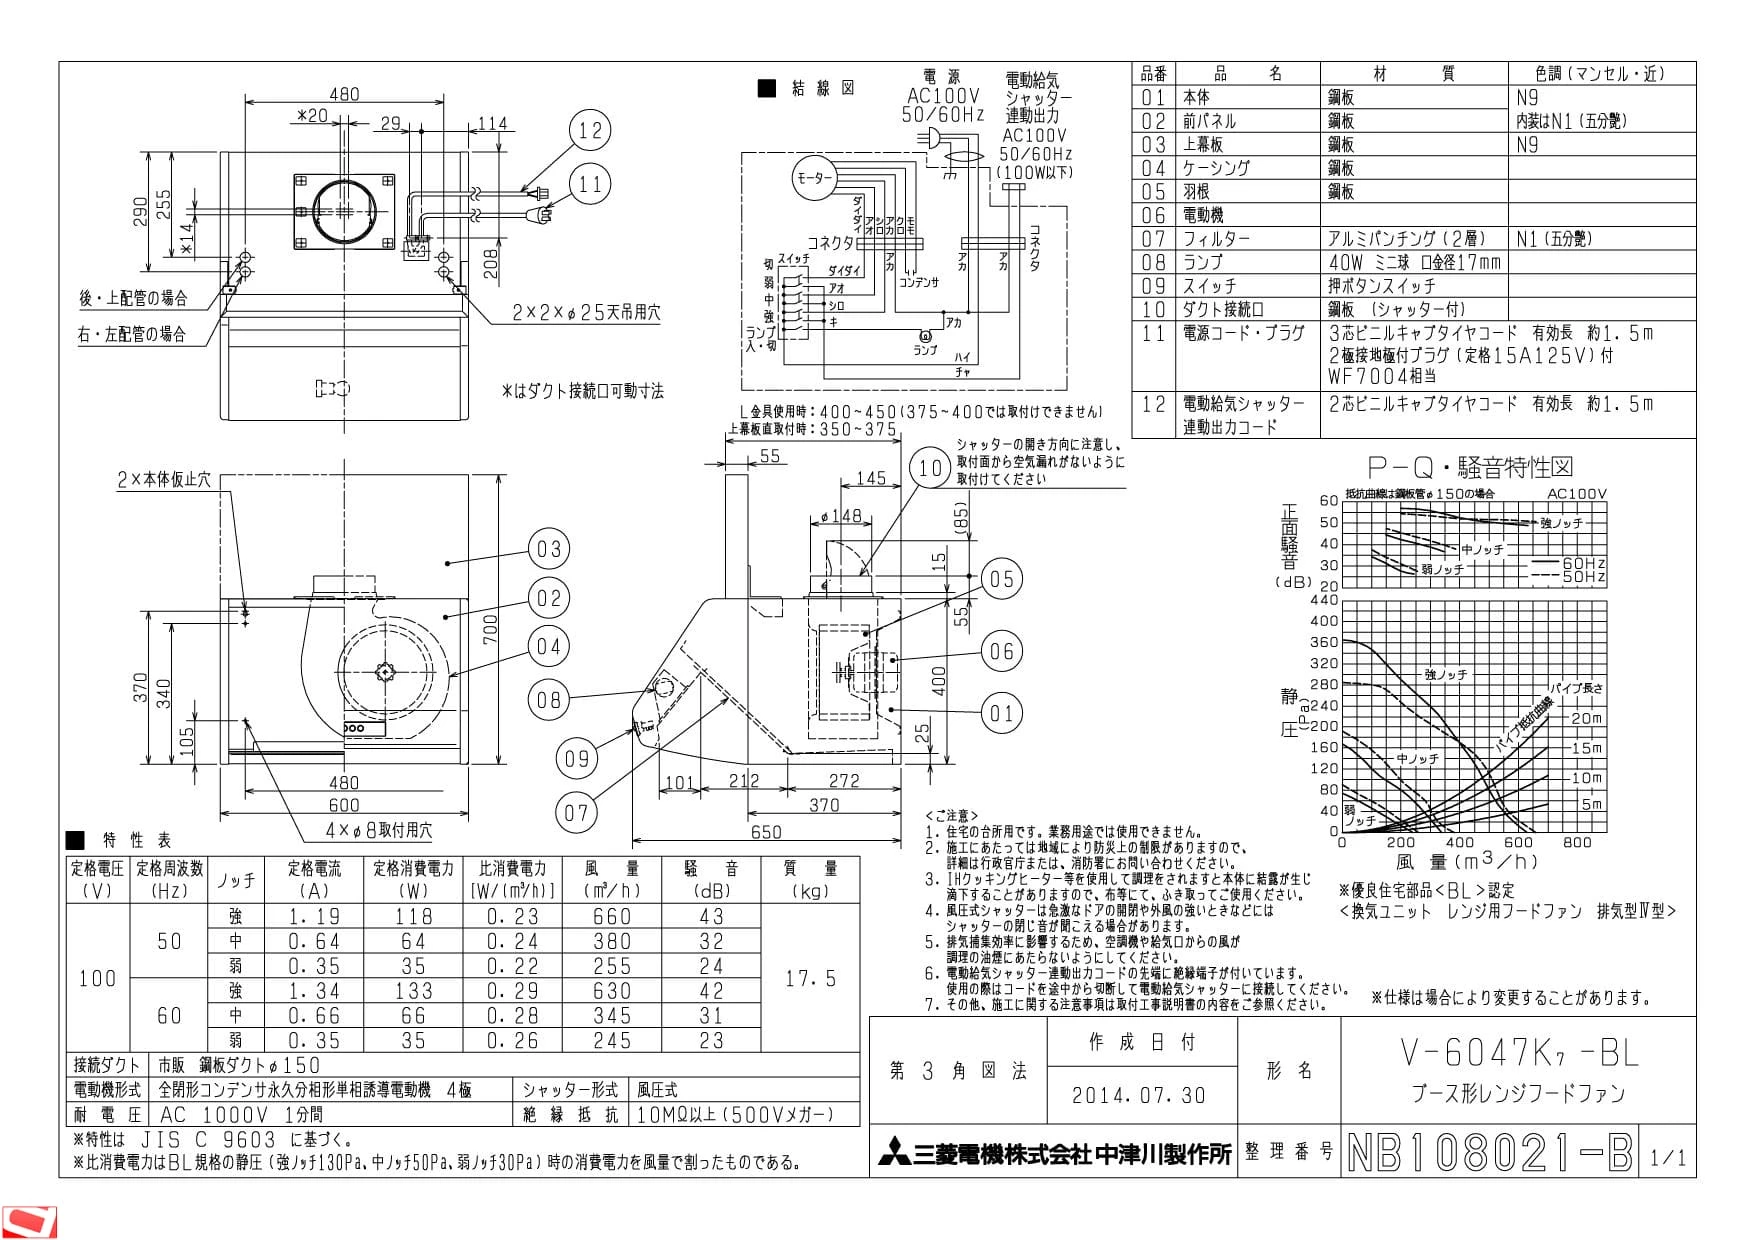 三菱レンジフードファン V-6047K7-BL